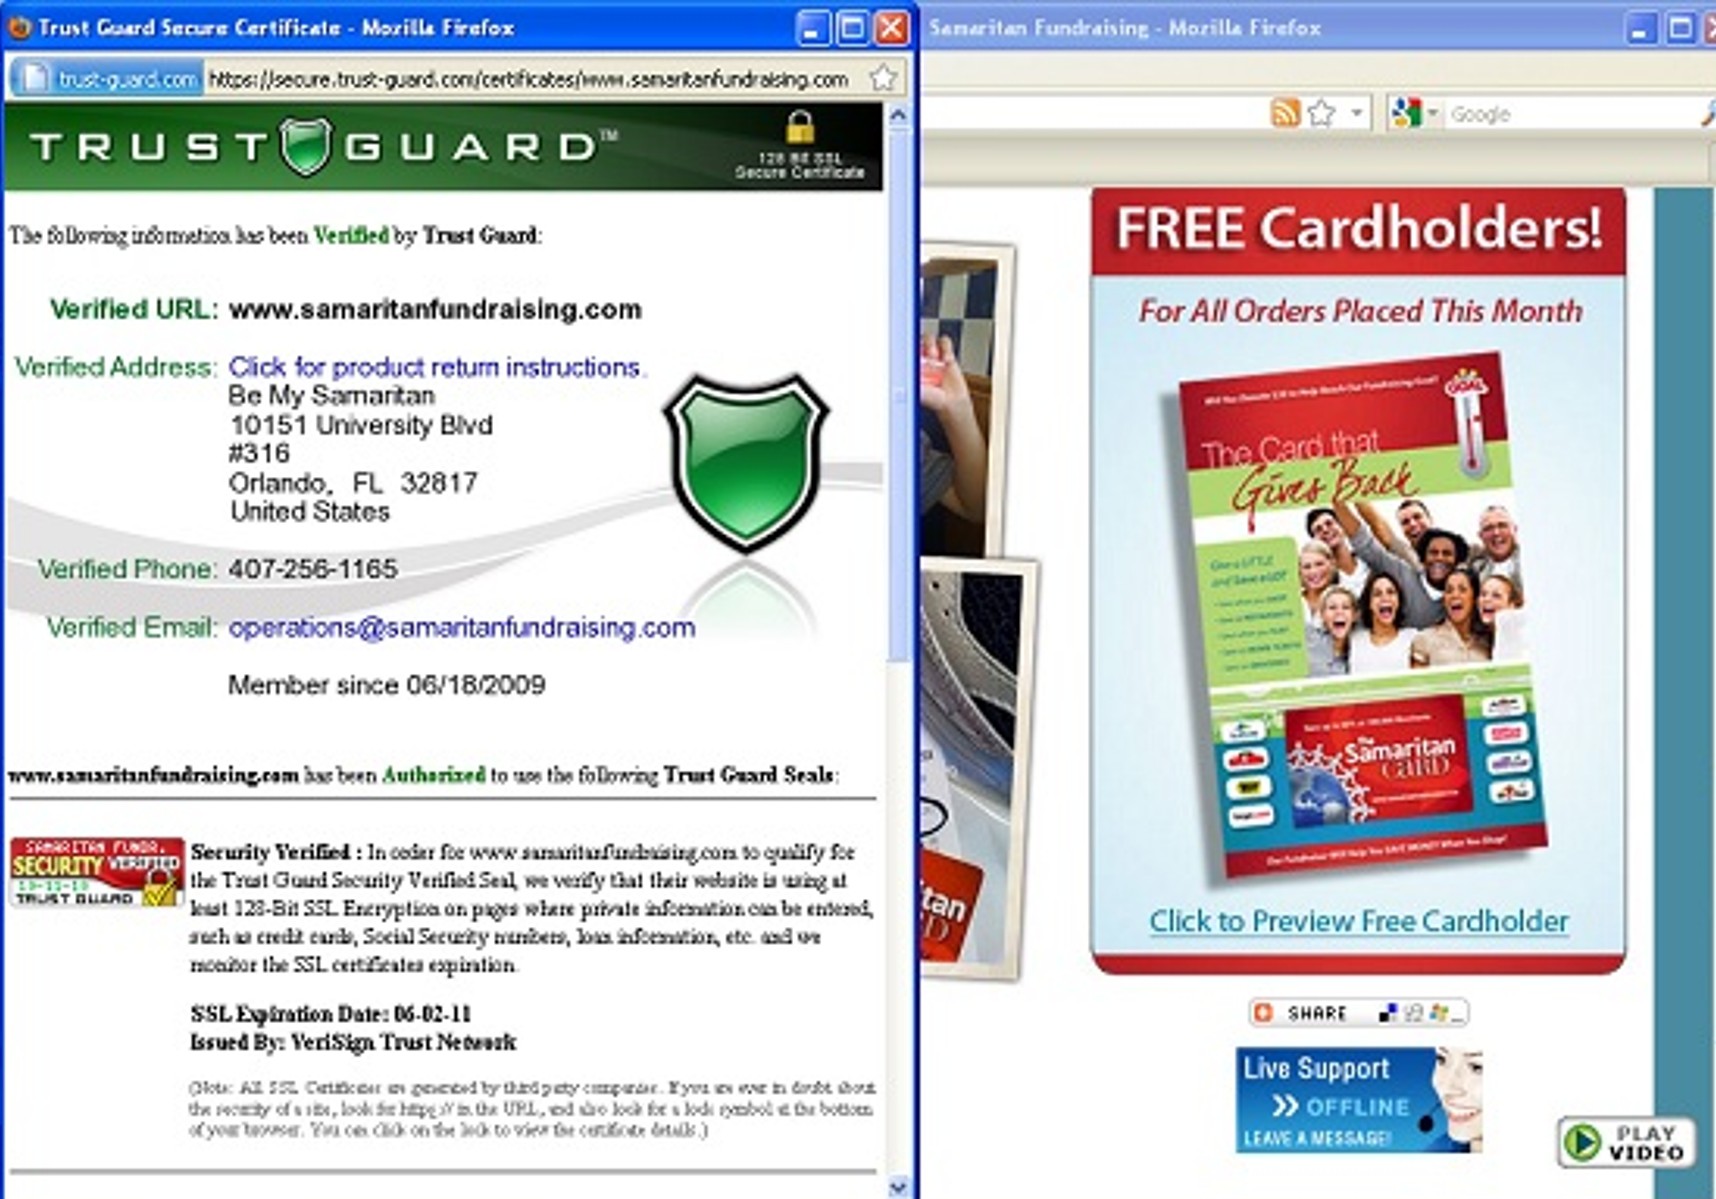 Samaritan Card Trust certificate gives address at a UPS store mailbox